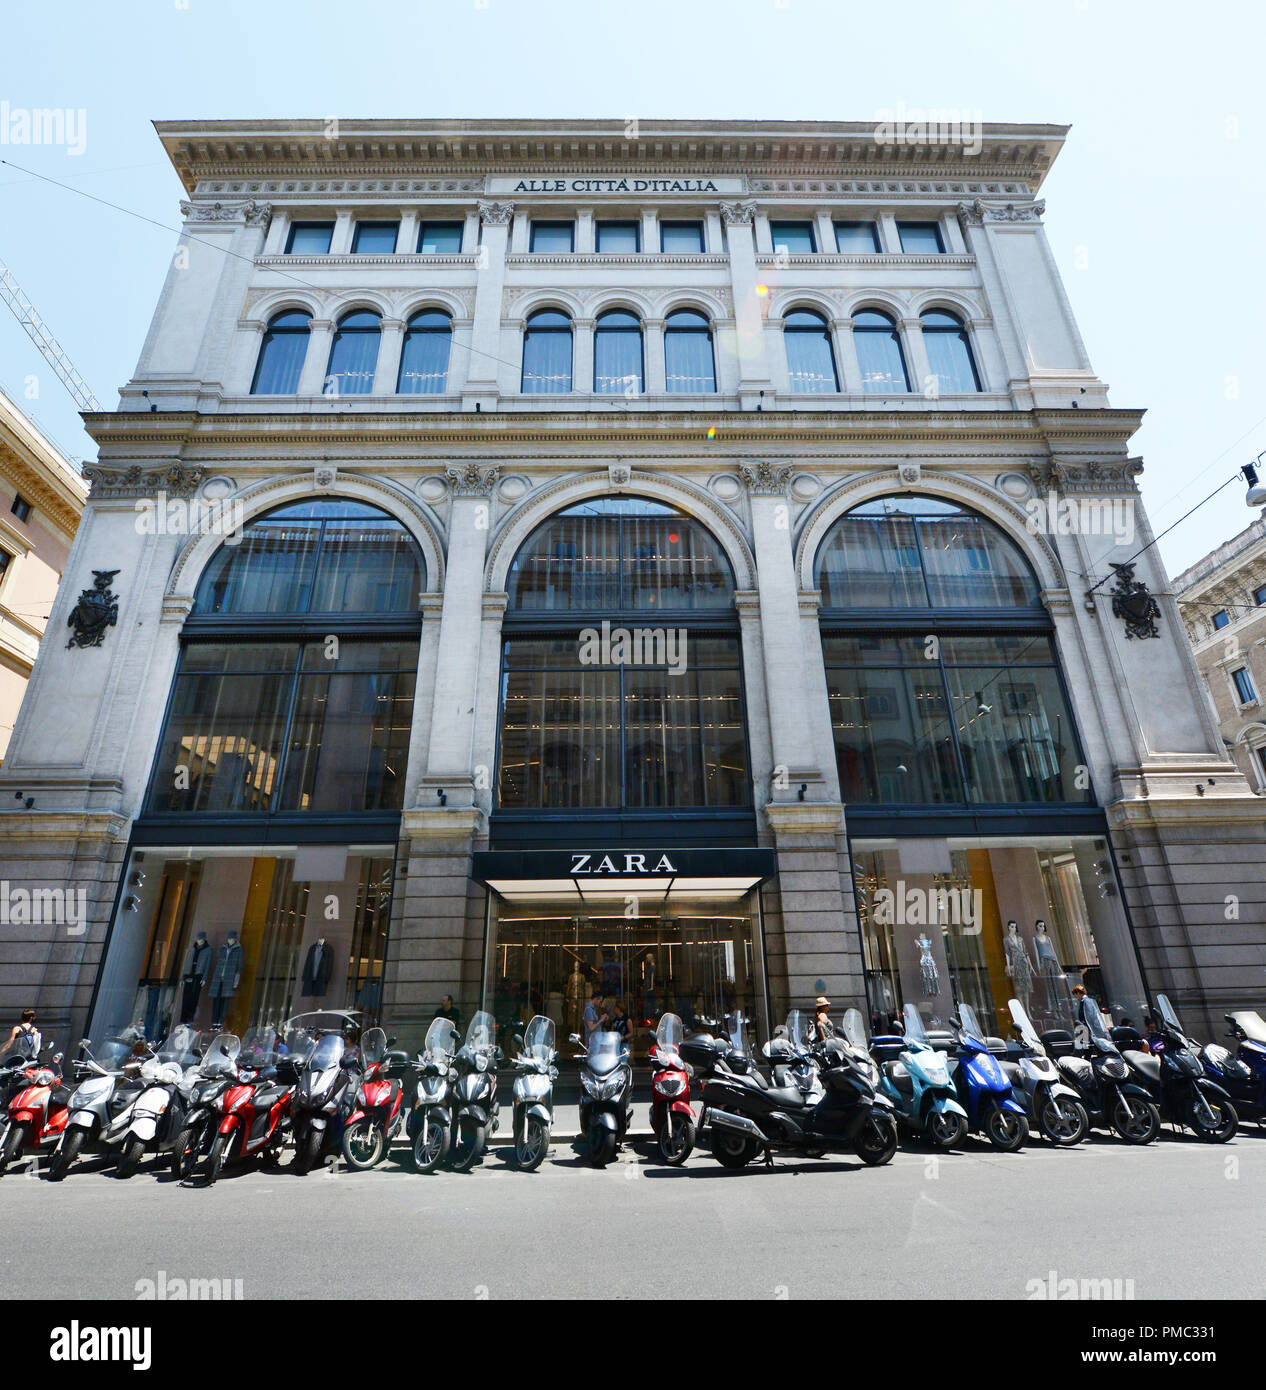 Zara shop on VIa Del Corso in Rome Stock Photo - Alamy